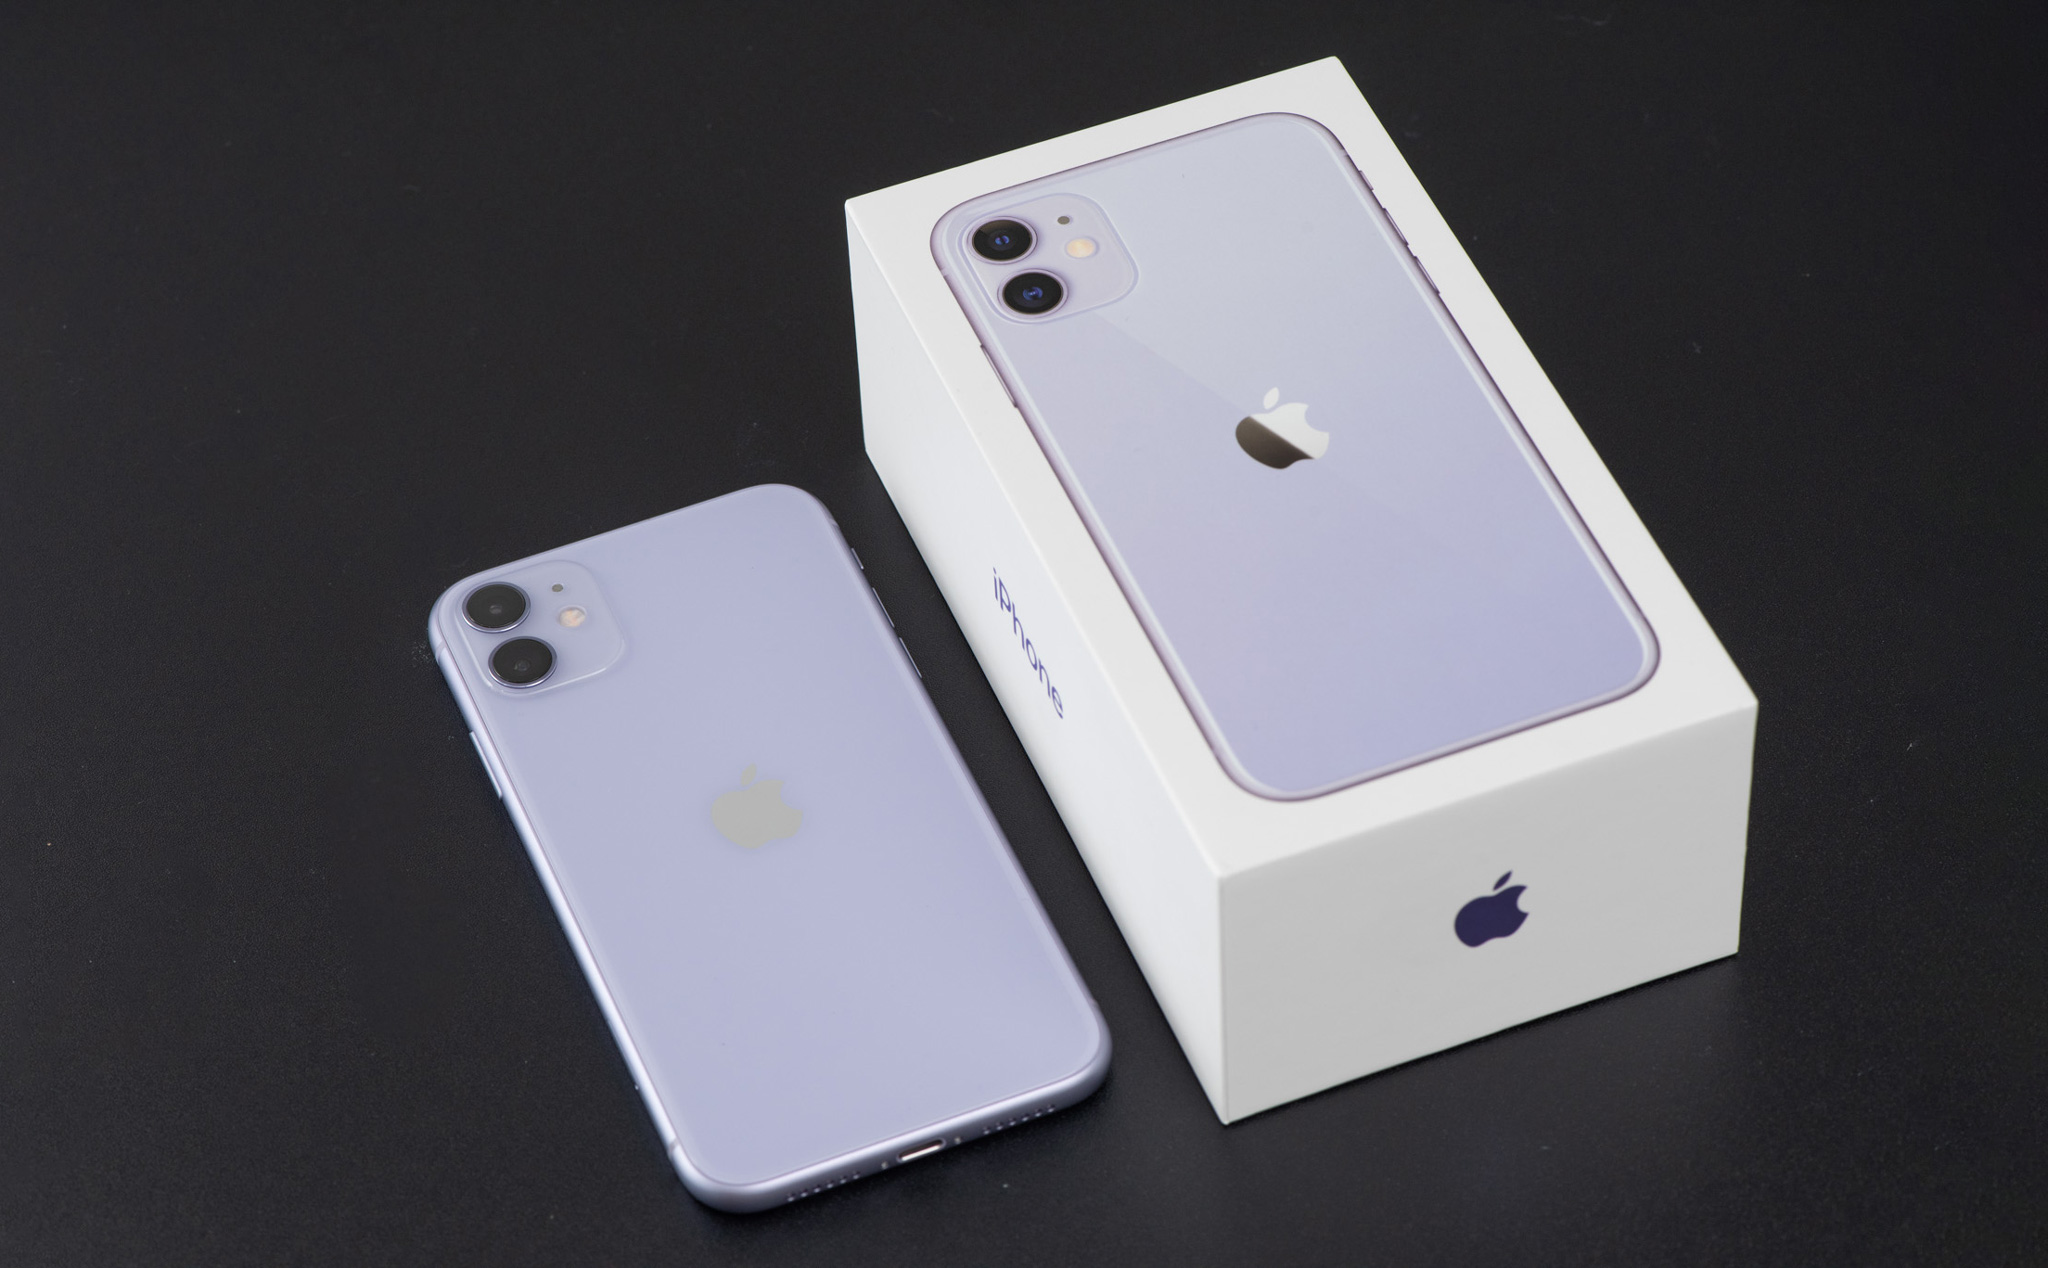 Hãy đến và khám phá bức ảnh iPhone 11 màu tím tuyệt đẹp, mẫu điện thoại được yêu thích nhất của Apple. Với màu sắc sang trọng và cấu hình mạnh mẽ, iPhone 11 màu tím chắc chắn sẽ khiến bạn say mê.